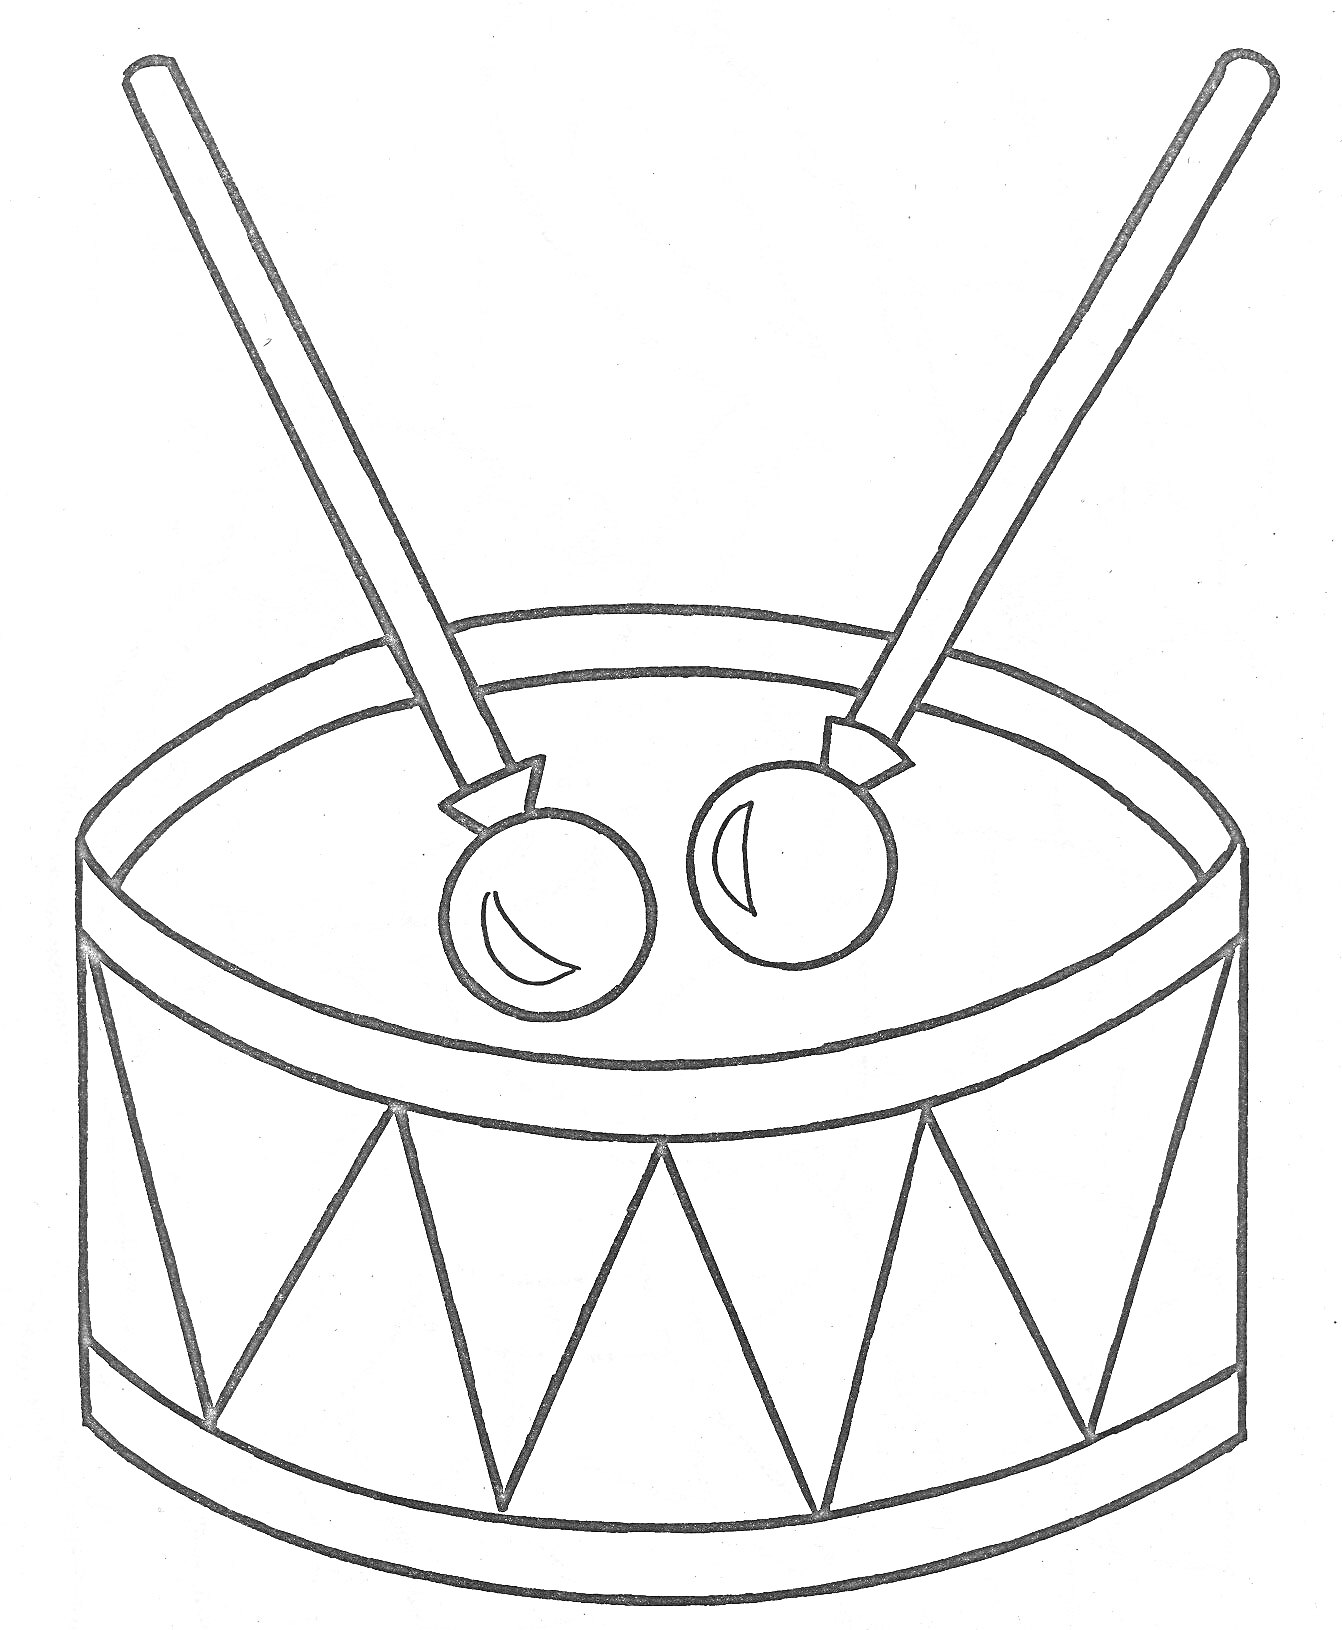 Раскраска Барабан с палочками (две барабанные палочки на барабане с треугольным узором)